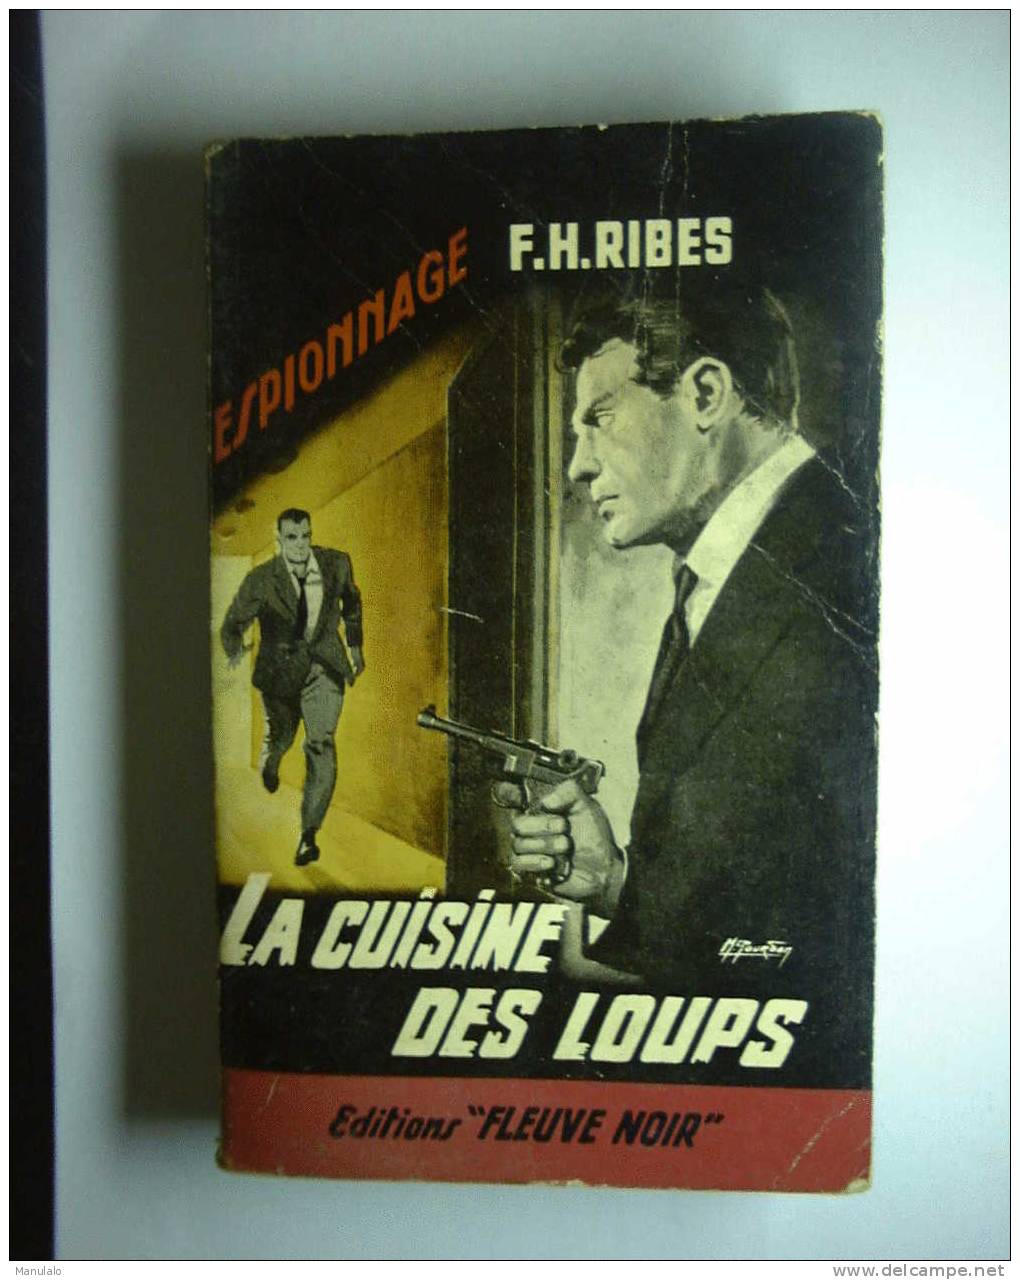 Livre Fleuve Noir Espionnage De F.H.ribes  " La Cuisine Des Loups " N°386 - Fleuve Noir